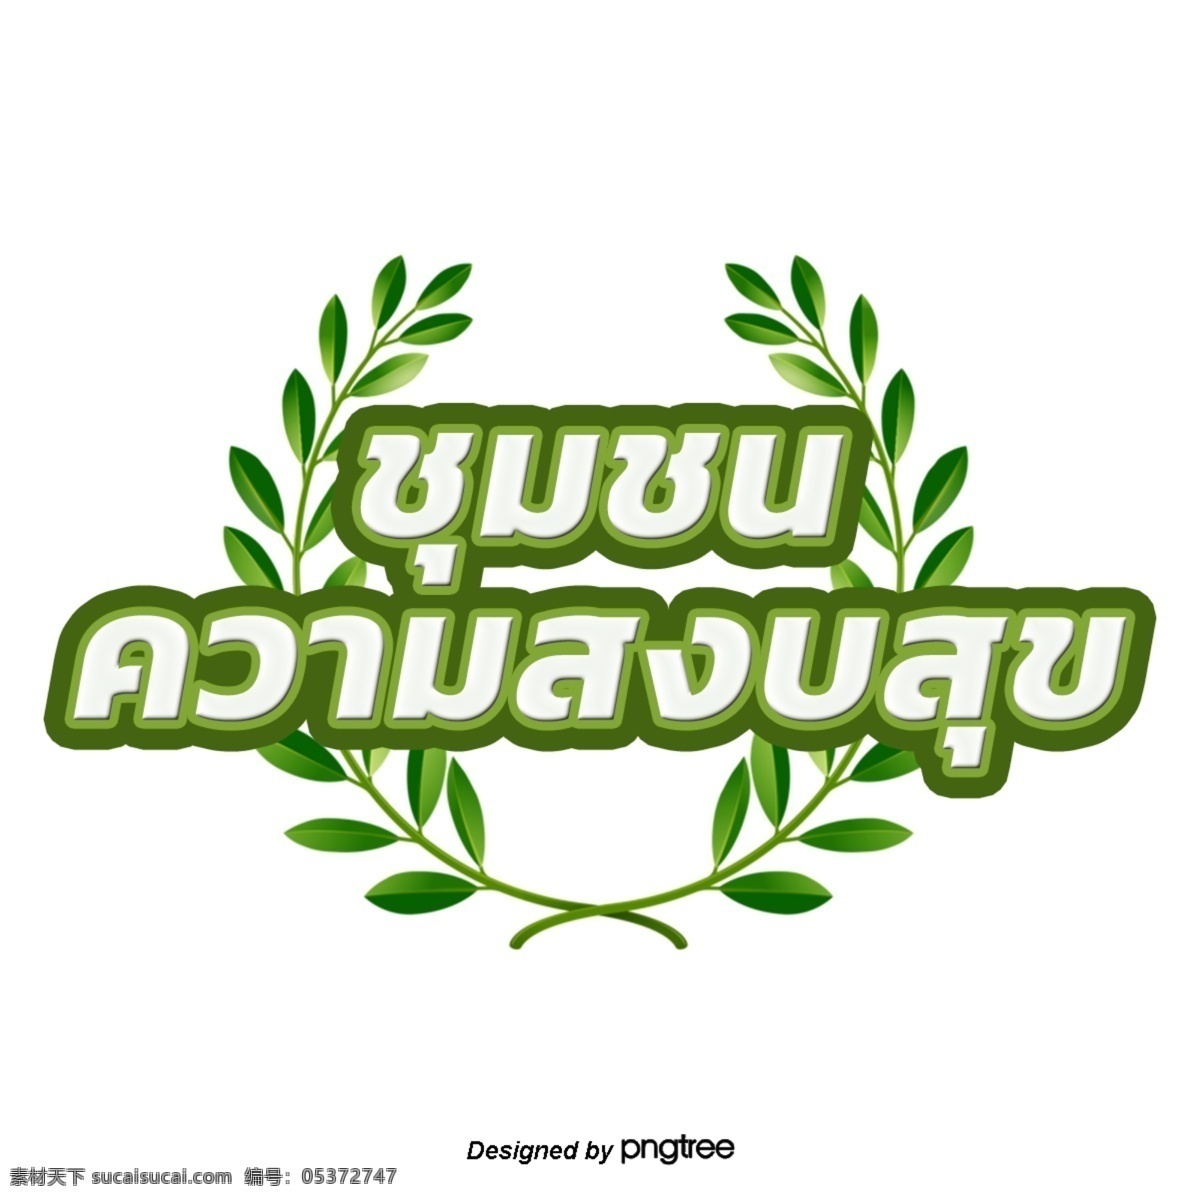 泰国 白色 浅绿色 叶子 字体 边缘 社区 和平